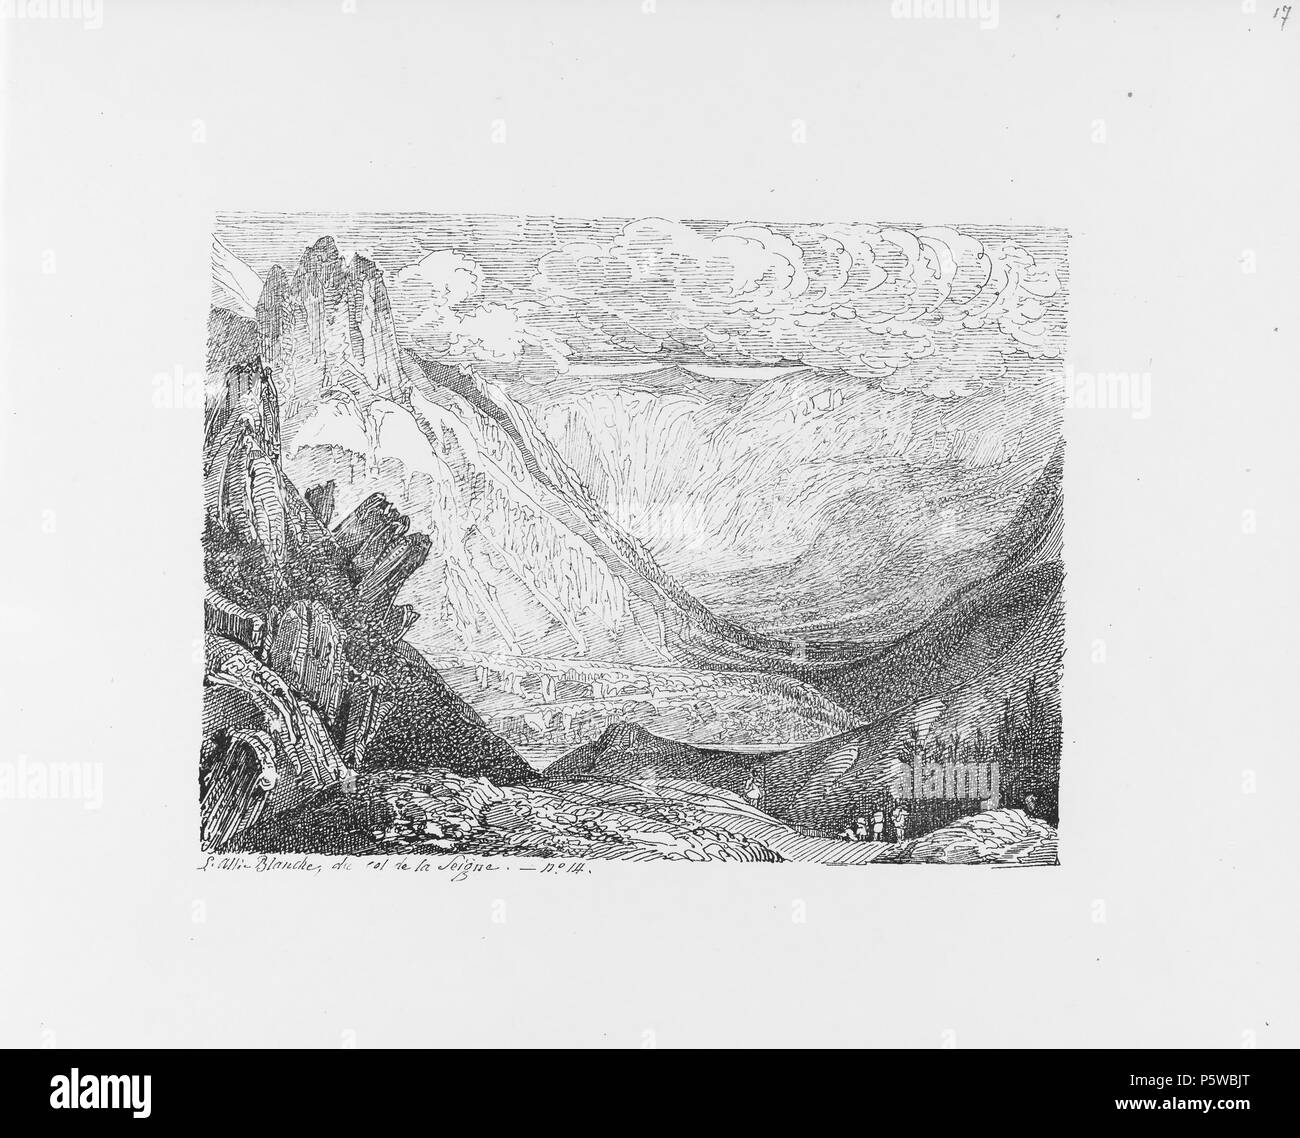 322 CH-NB-Voyage autour du Mont-Blanc dans les vallées d'Hérens de Zermatt et au Grimsel 1843-nbdig-19161-016 Stock Photo